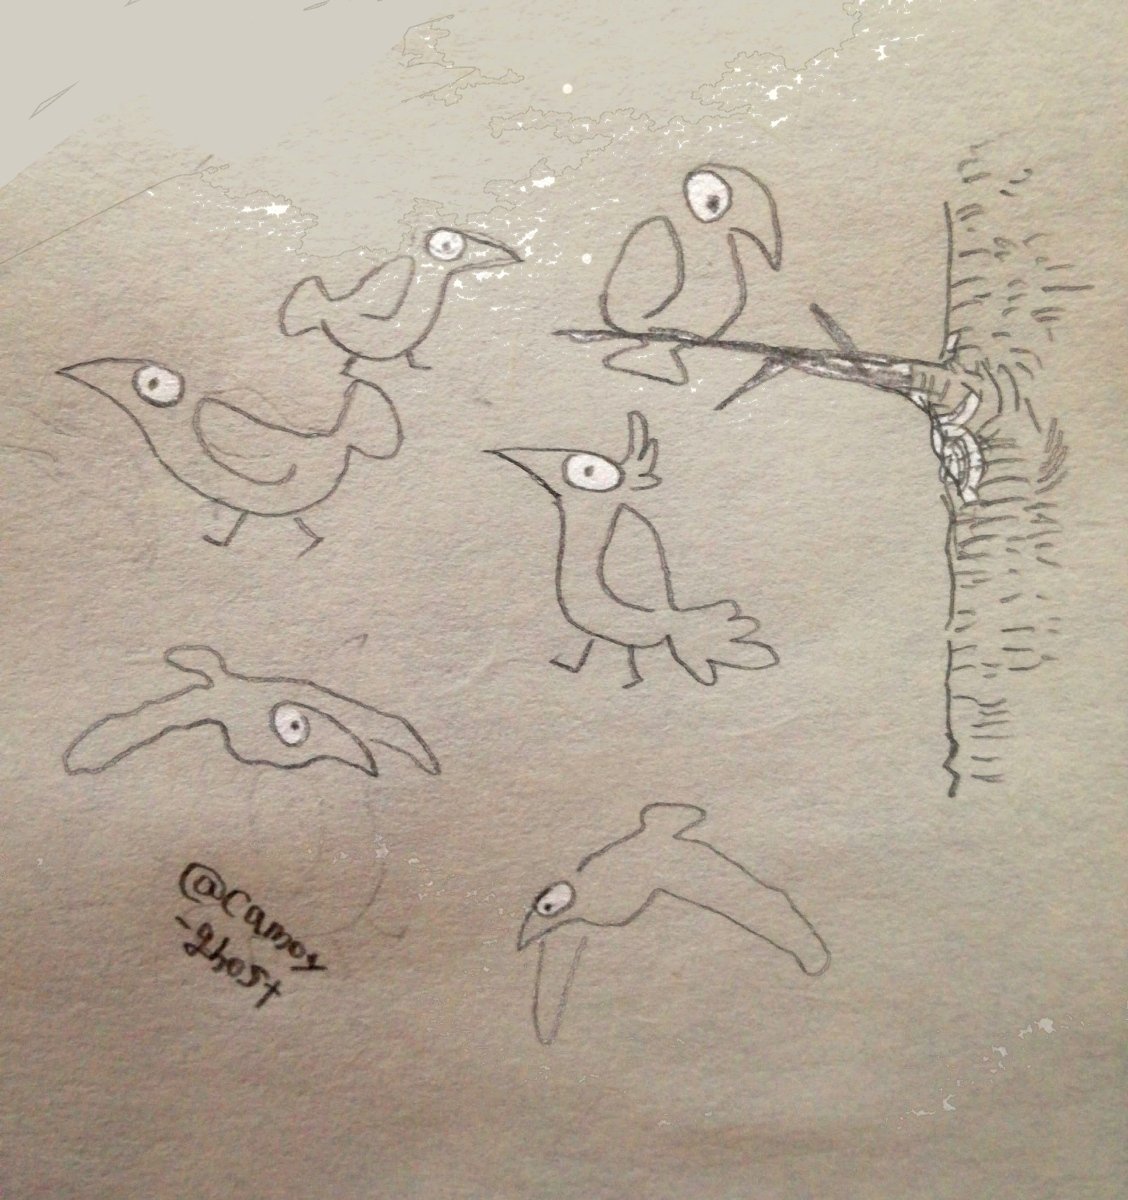 角つけたり、シンプルな線で描いたり 色々描く⌒(ё)⌒ヘ(ё)ヘ

#あなたの鳥見せてください 